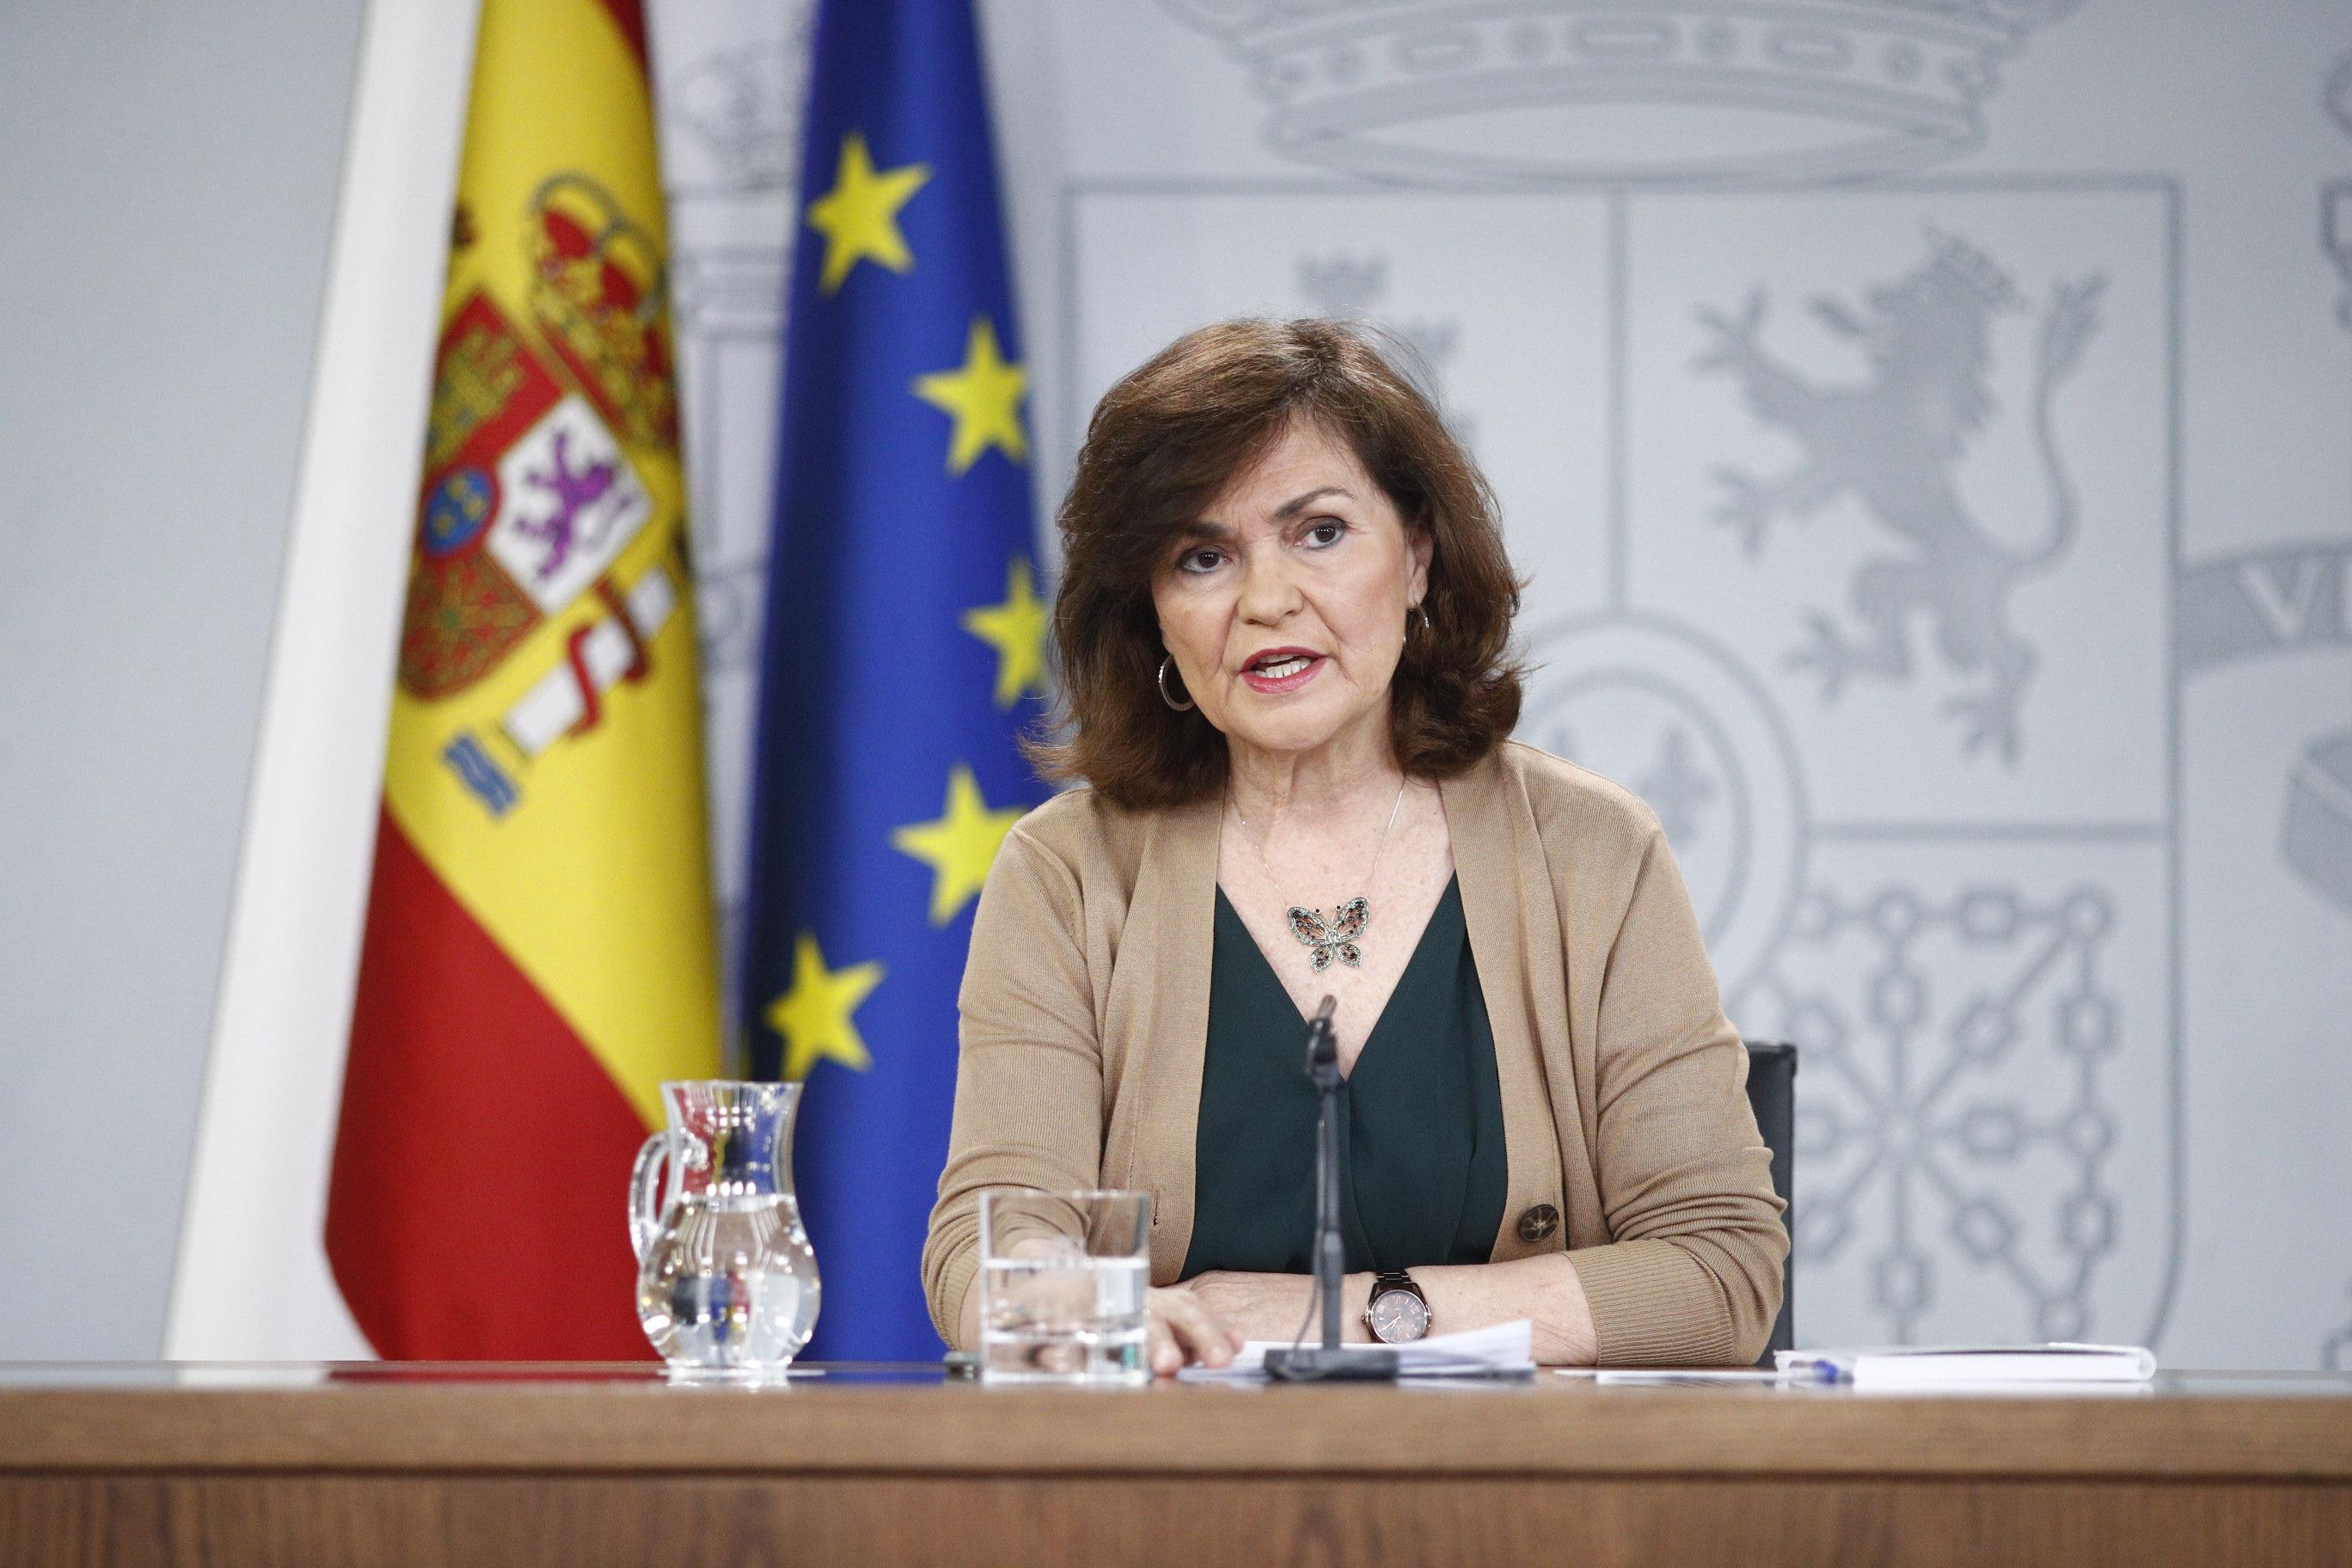 La vicepresidenta del Gobierno Carmen Calvo comparece ante los medios de comunicación tras una reunión del Consejo de Ministros. Europa Press.